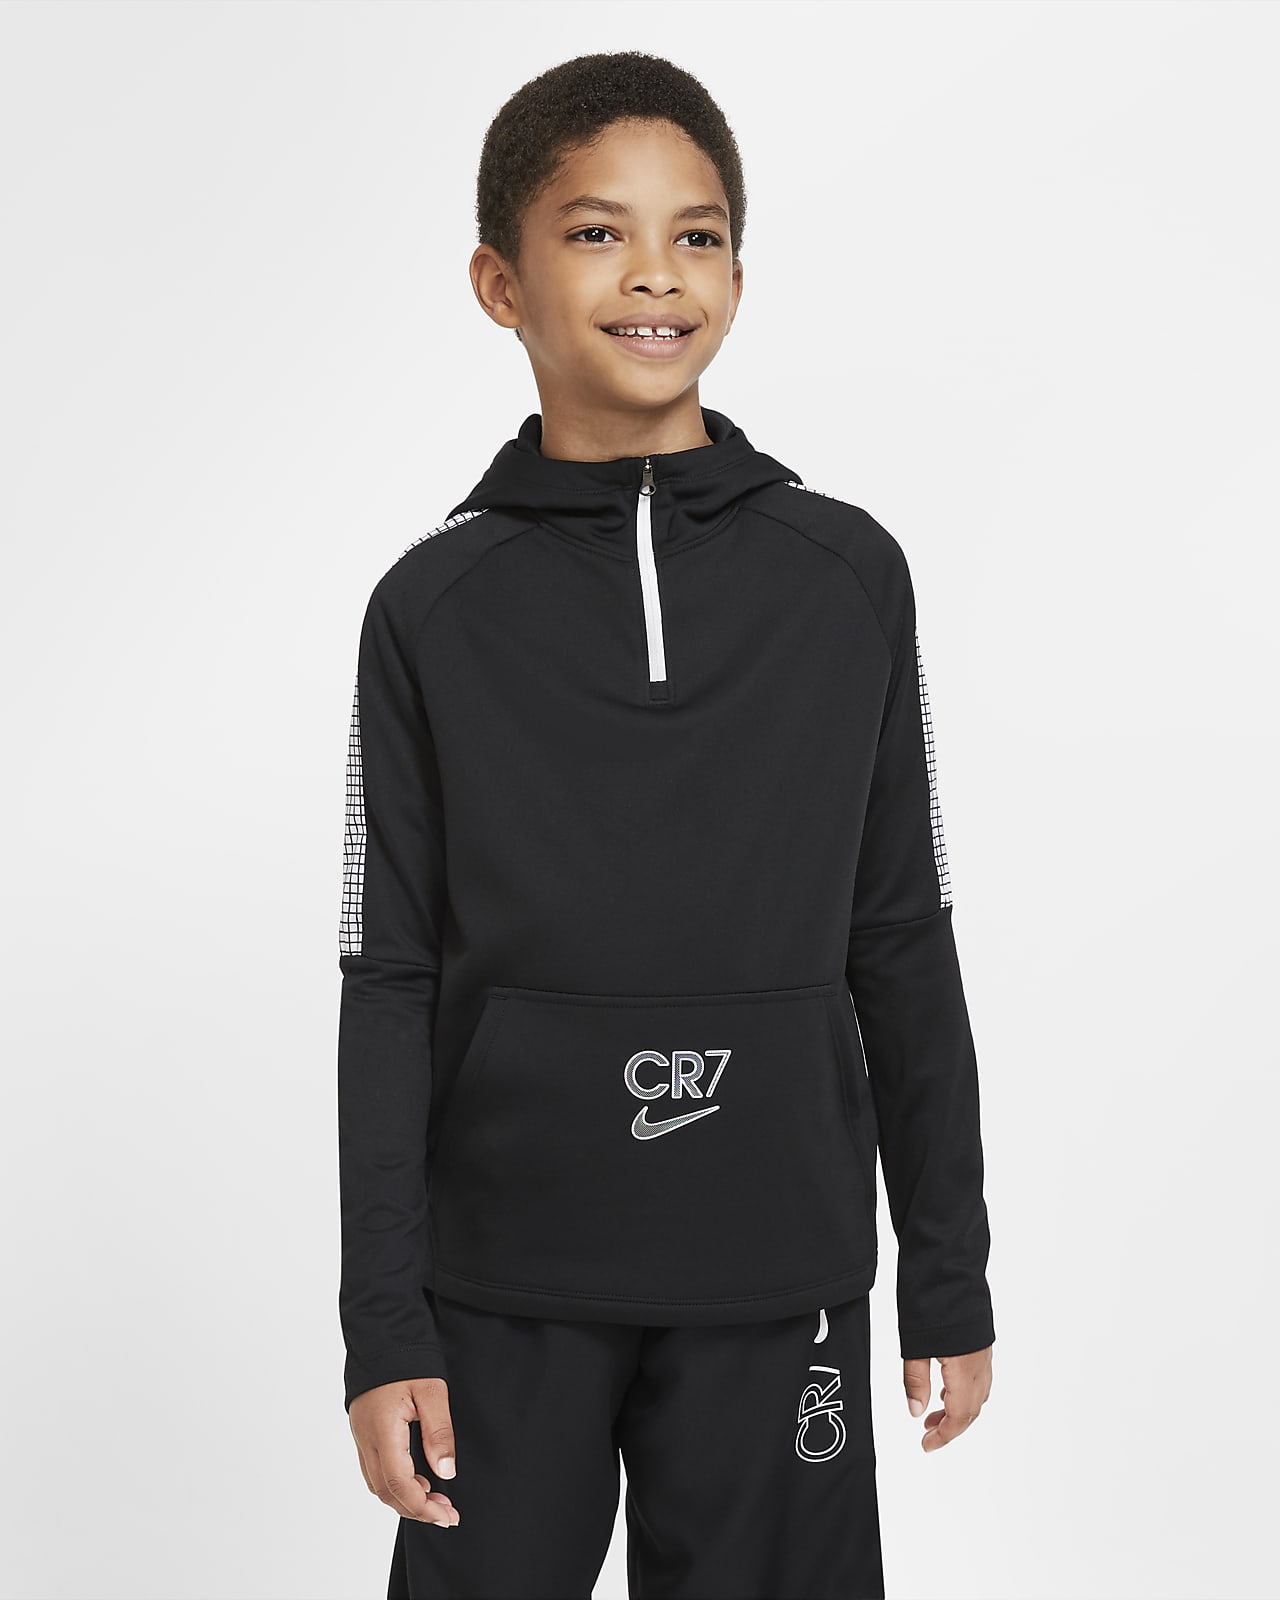 Nike公式 ナイキ Dri Fit Cr7 ジュニア 1 4ジップ サッカーパーカー オンラインストア 通販サイト